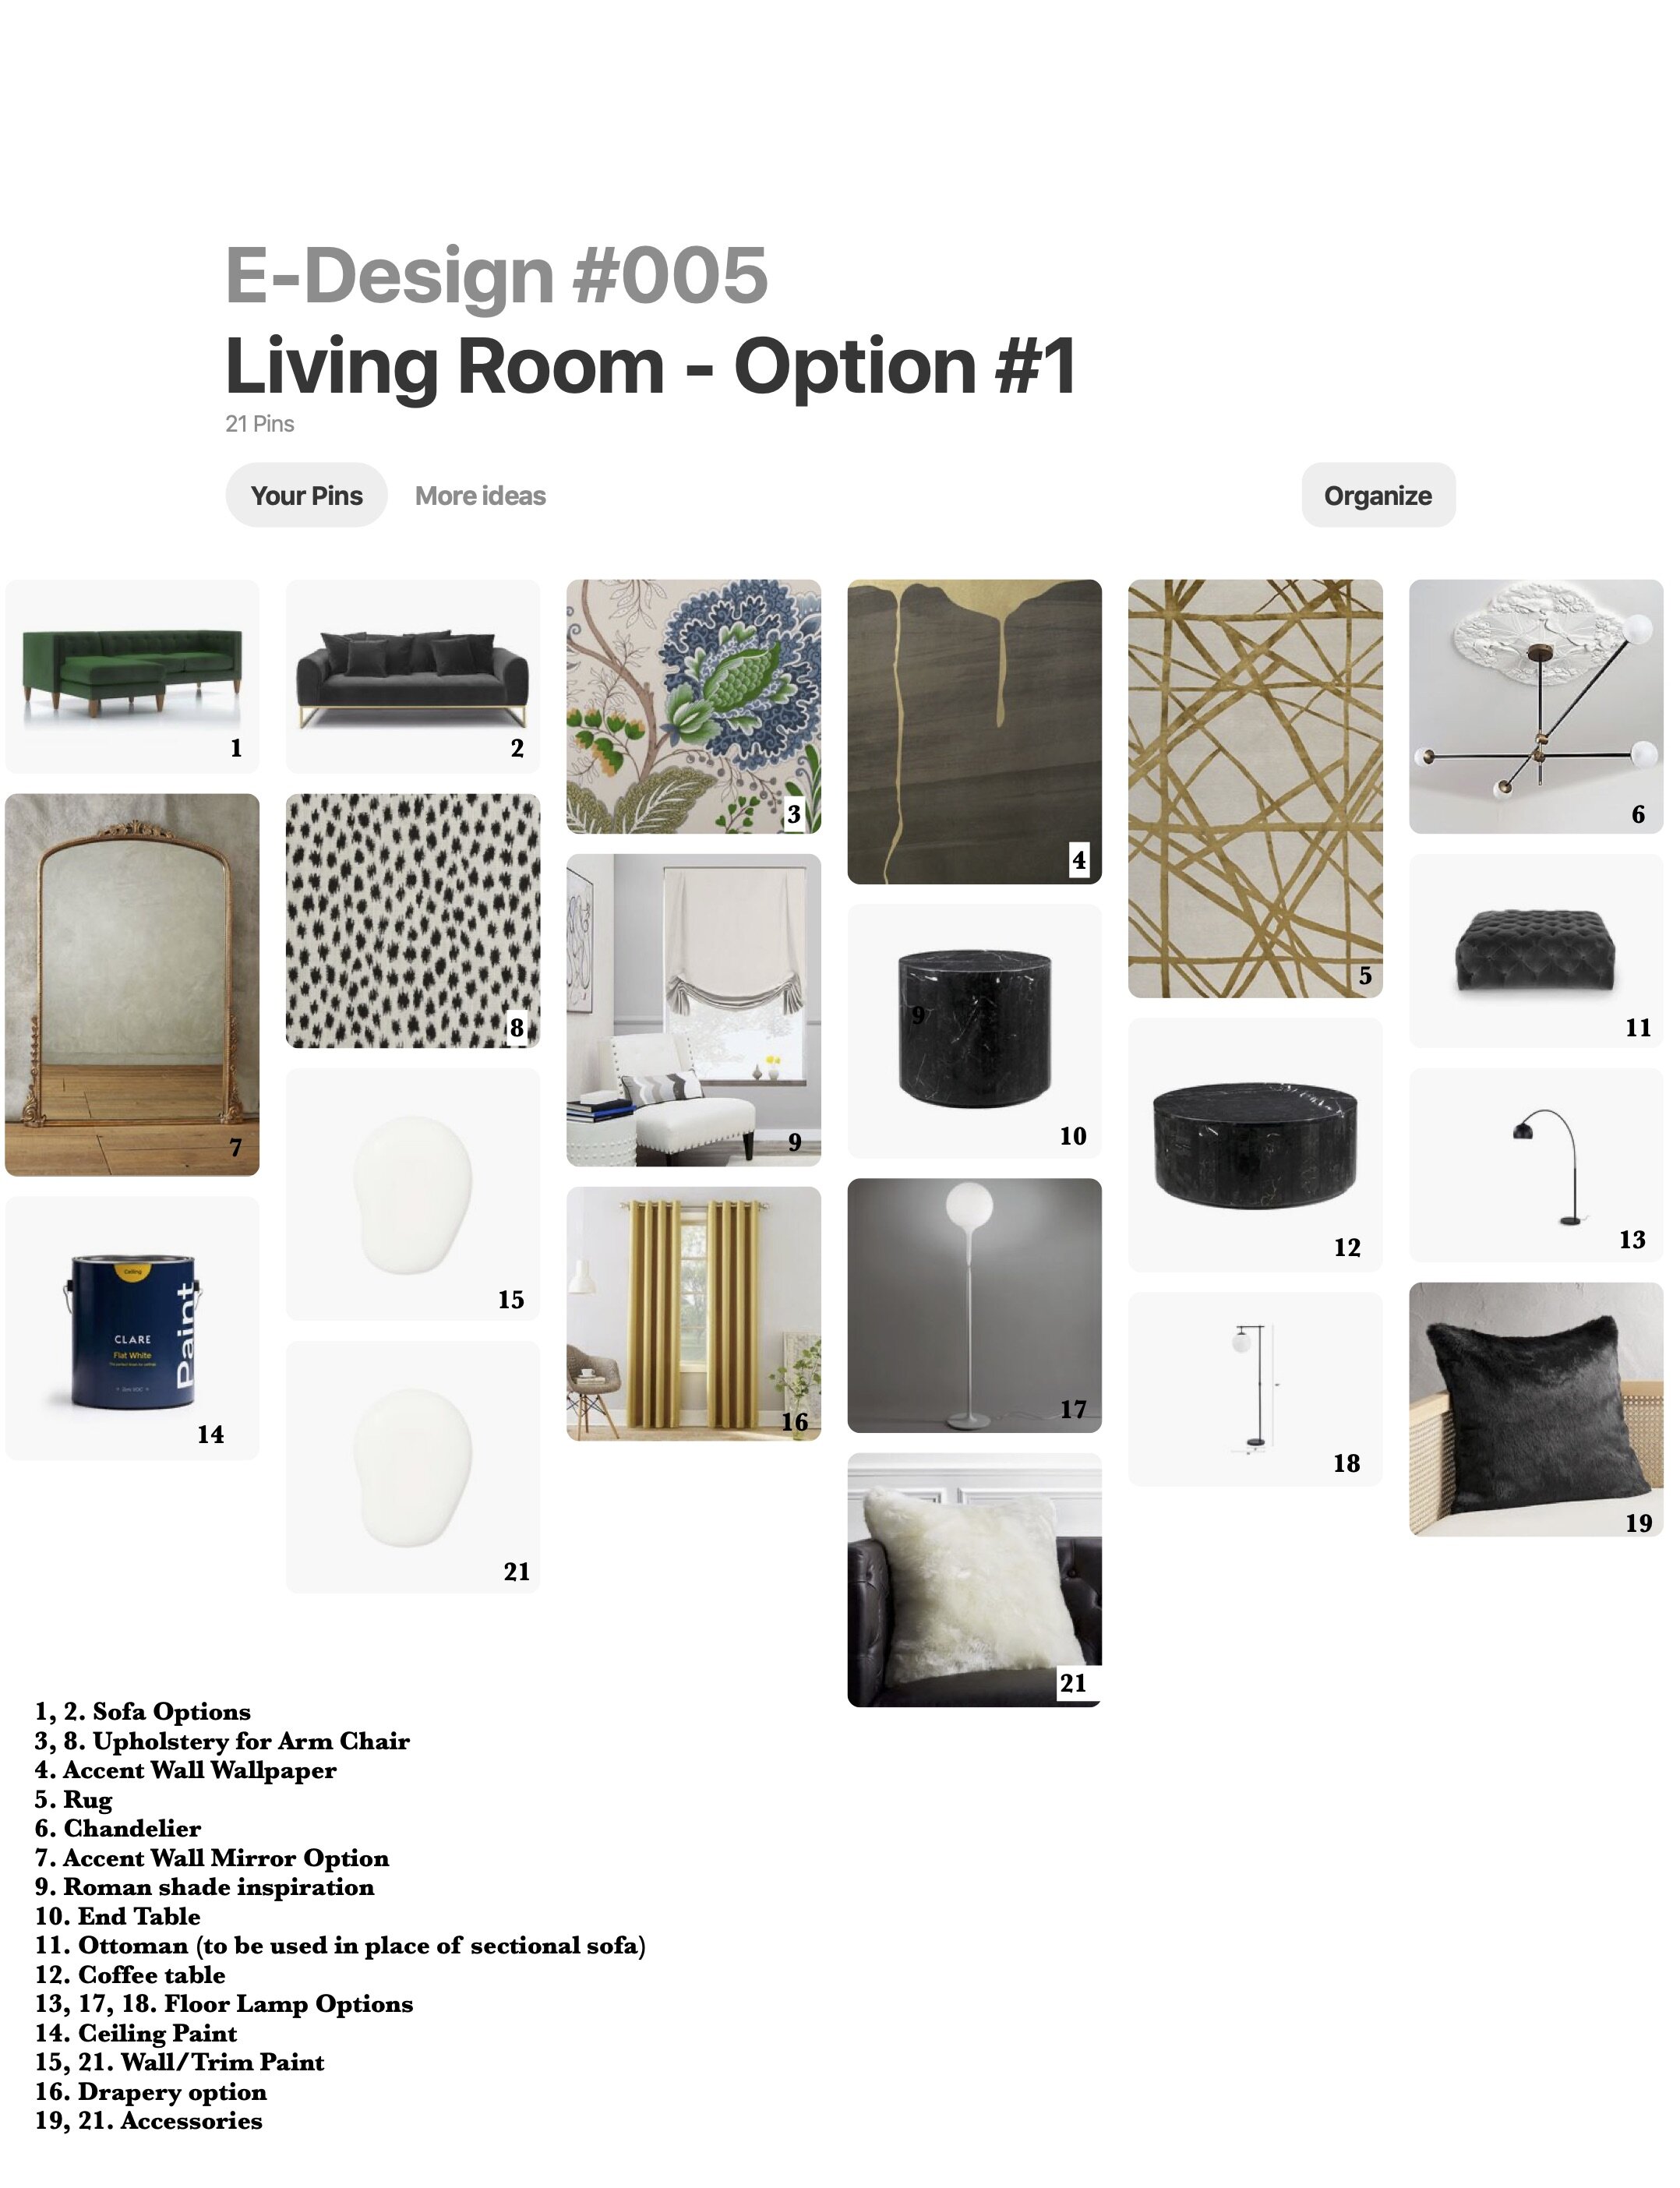 Living Room Option #1 - Pinterest.jpg